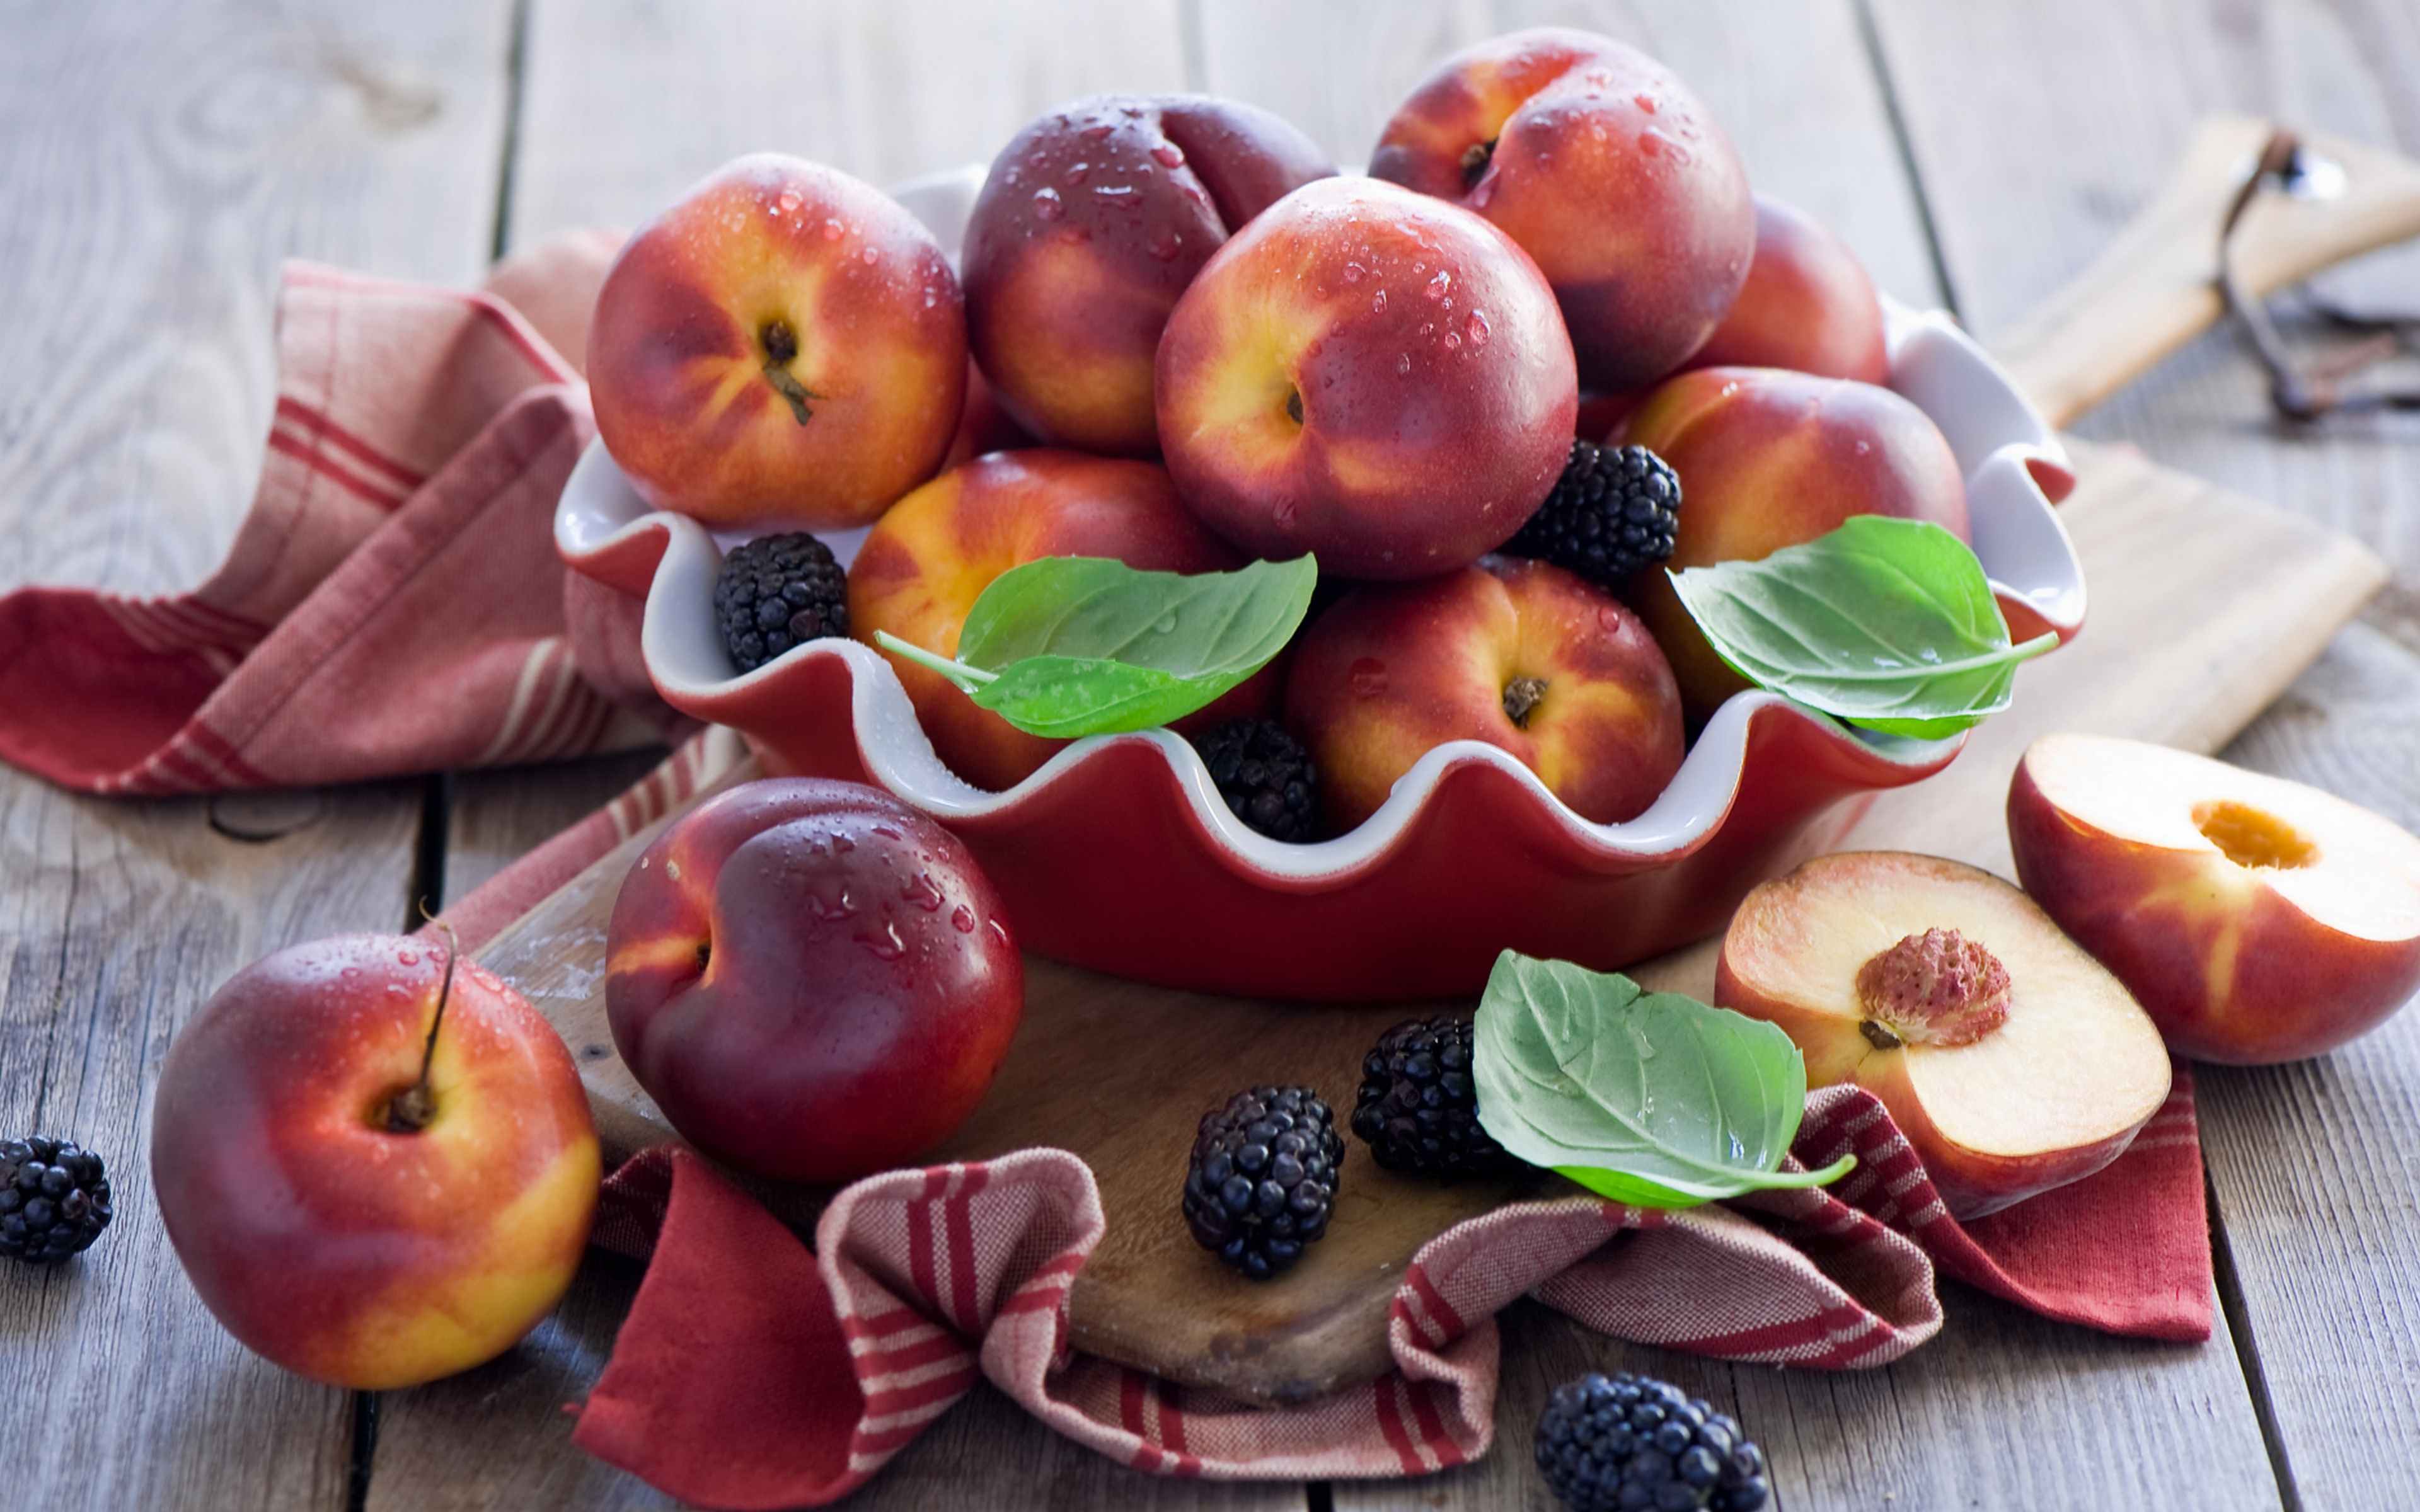 Фрукты предмет. Фрукты на столе. Яблоки и ягоды на тарелке. Персик фрукт. Эстетика фруктов.